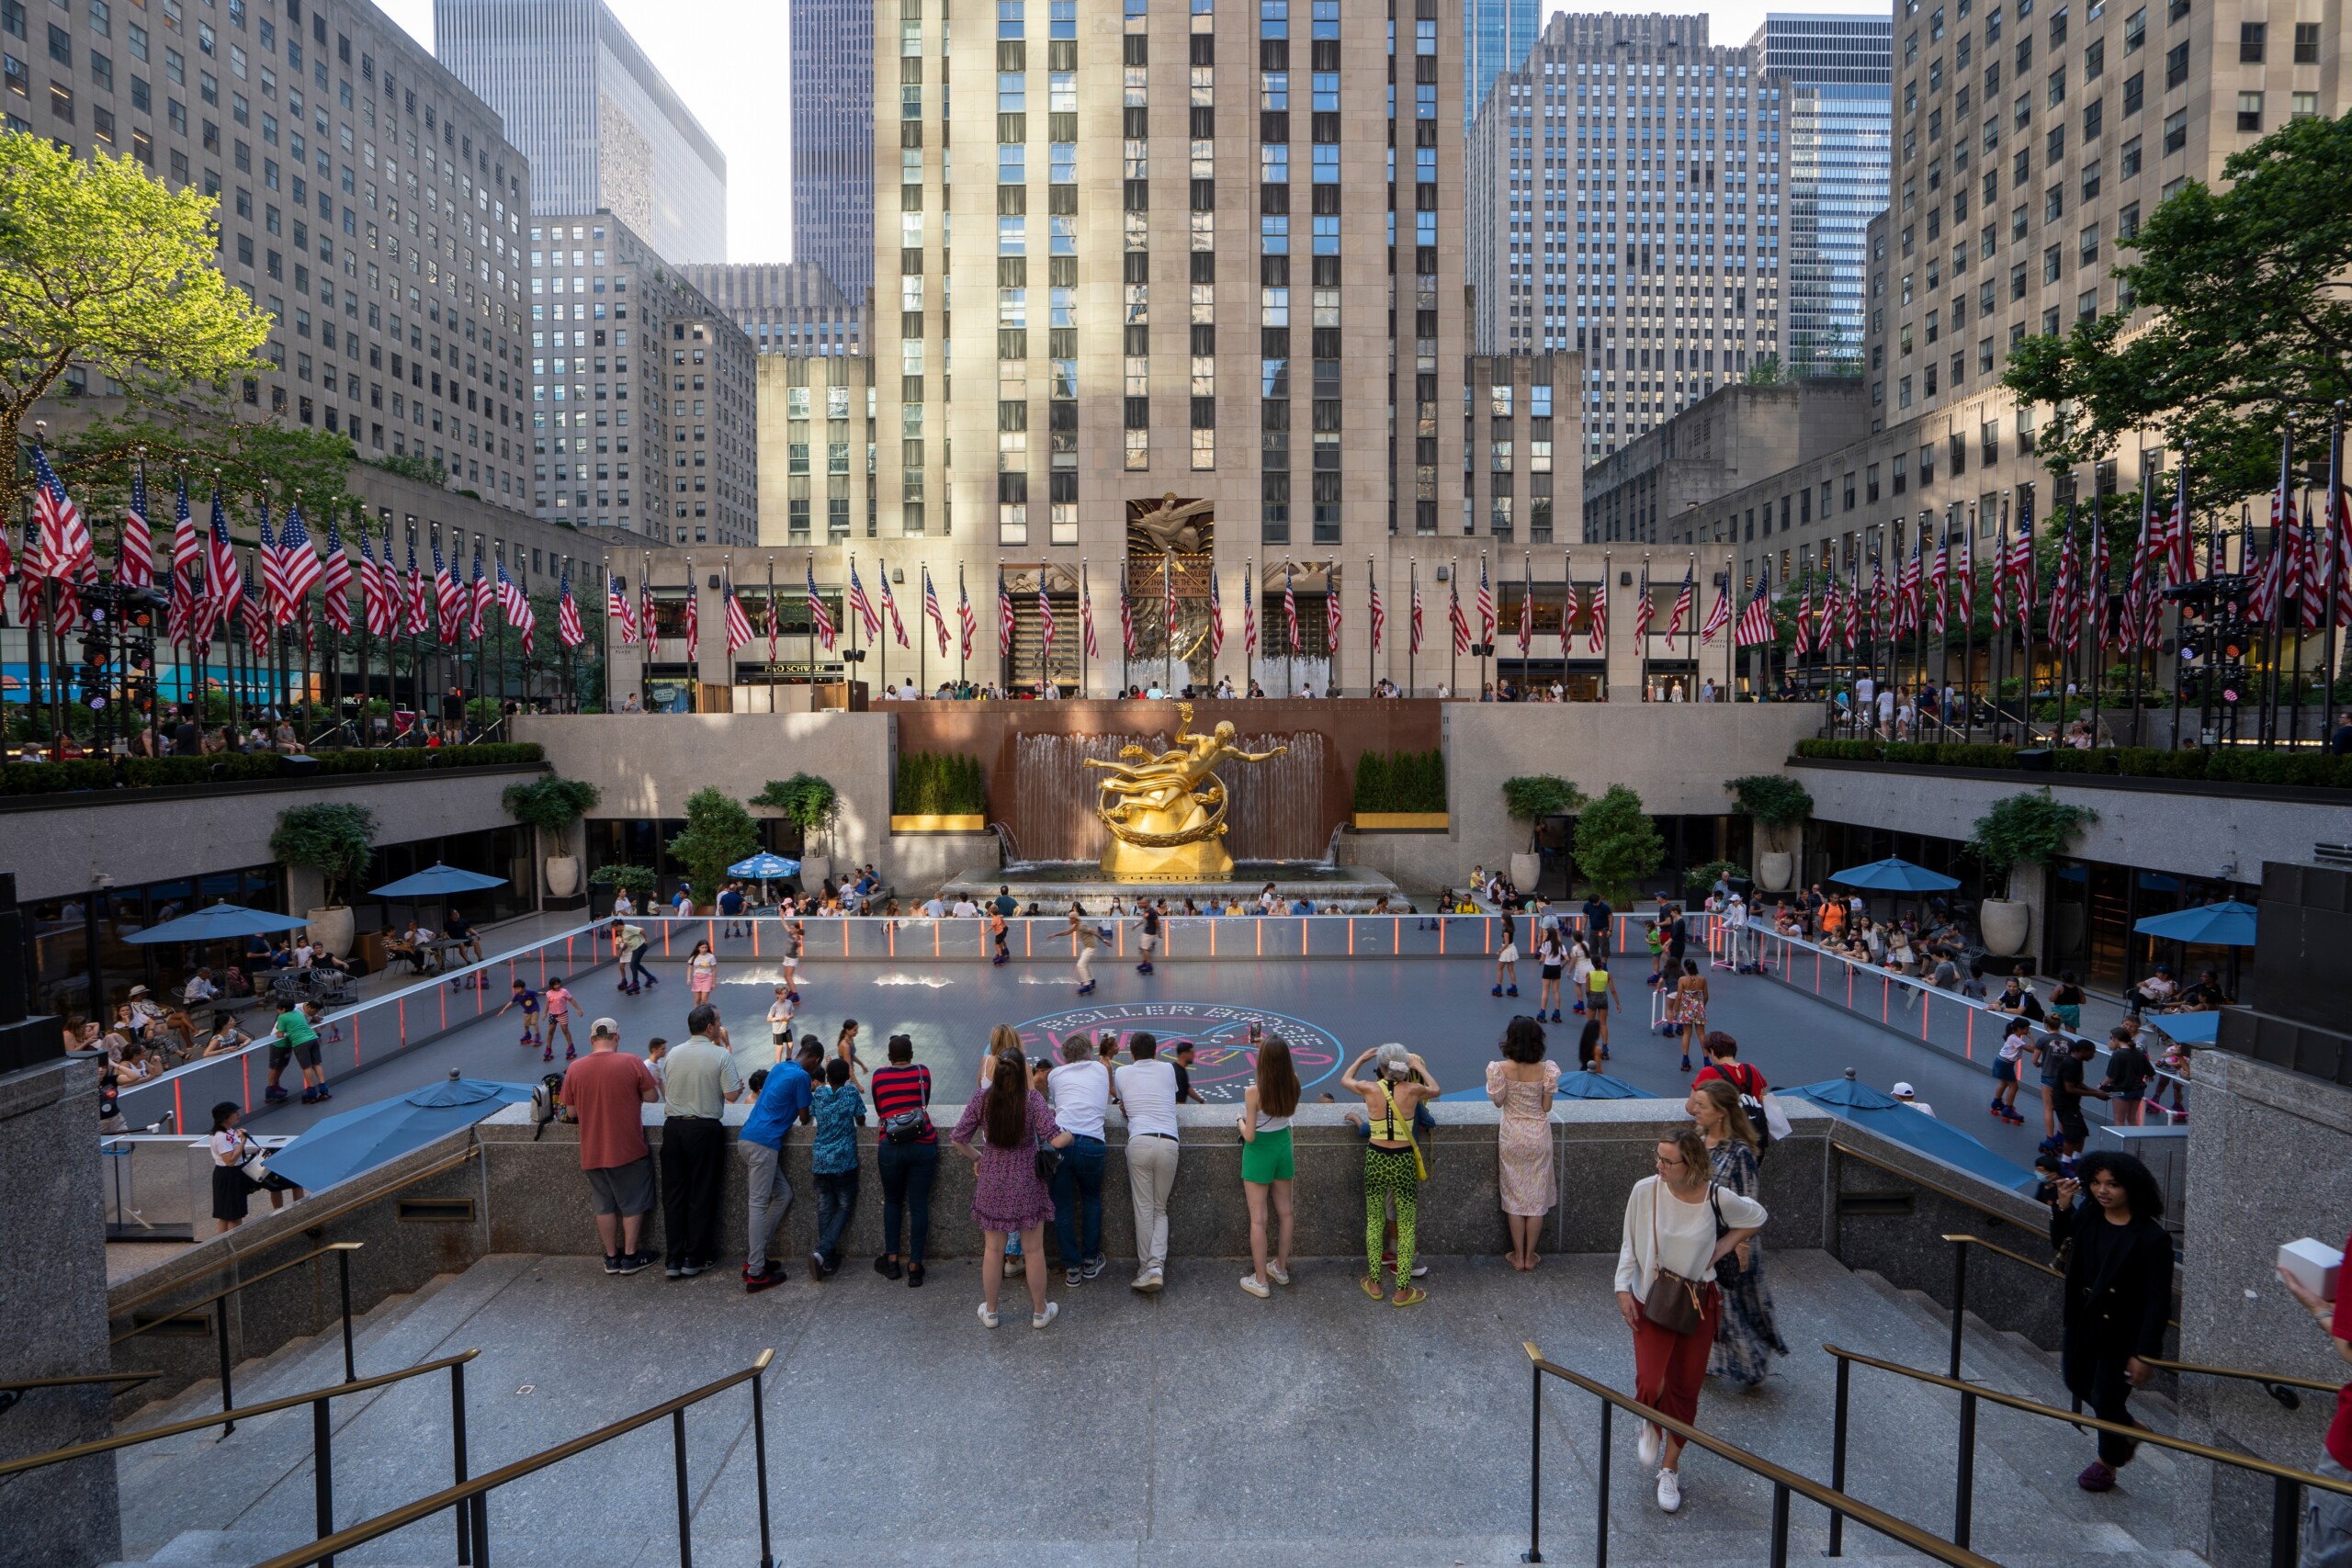 Nowy Jork, Ny, USA - 2 lipca 2022: Lodowisko w Rockefeller Center na środkowym Manhattanie w Nowym Jorku, w letni dzień., licencja: shutterstock/By Tada Images